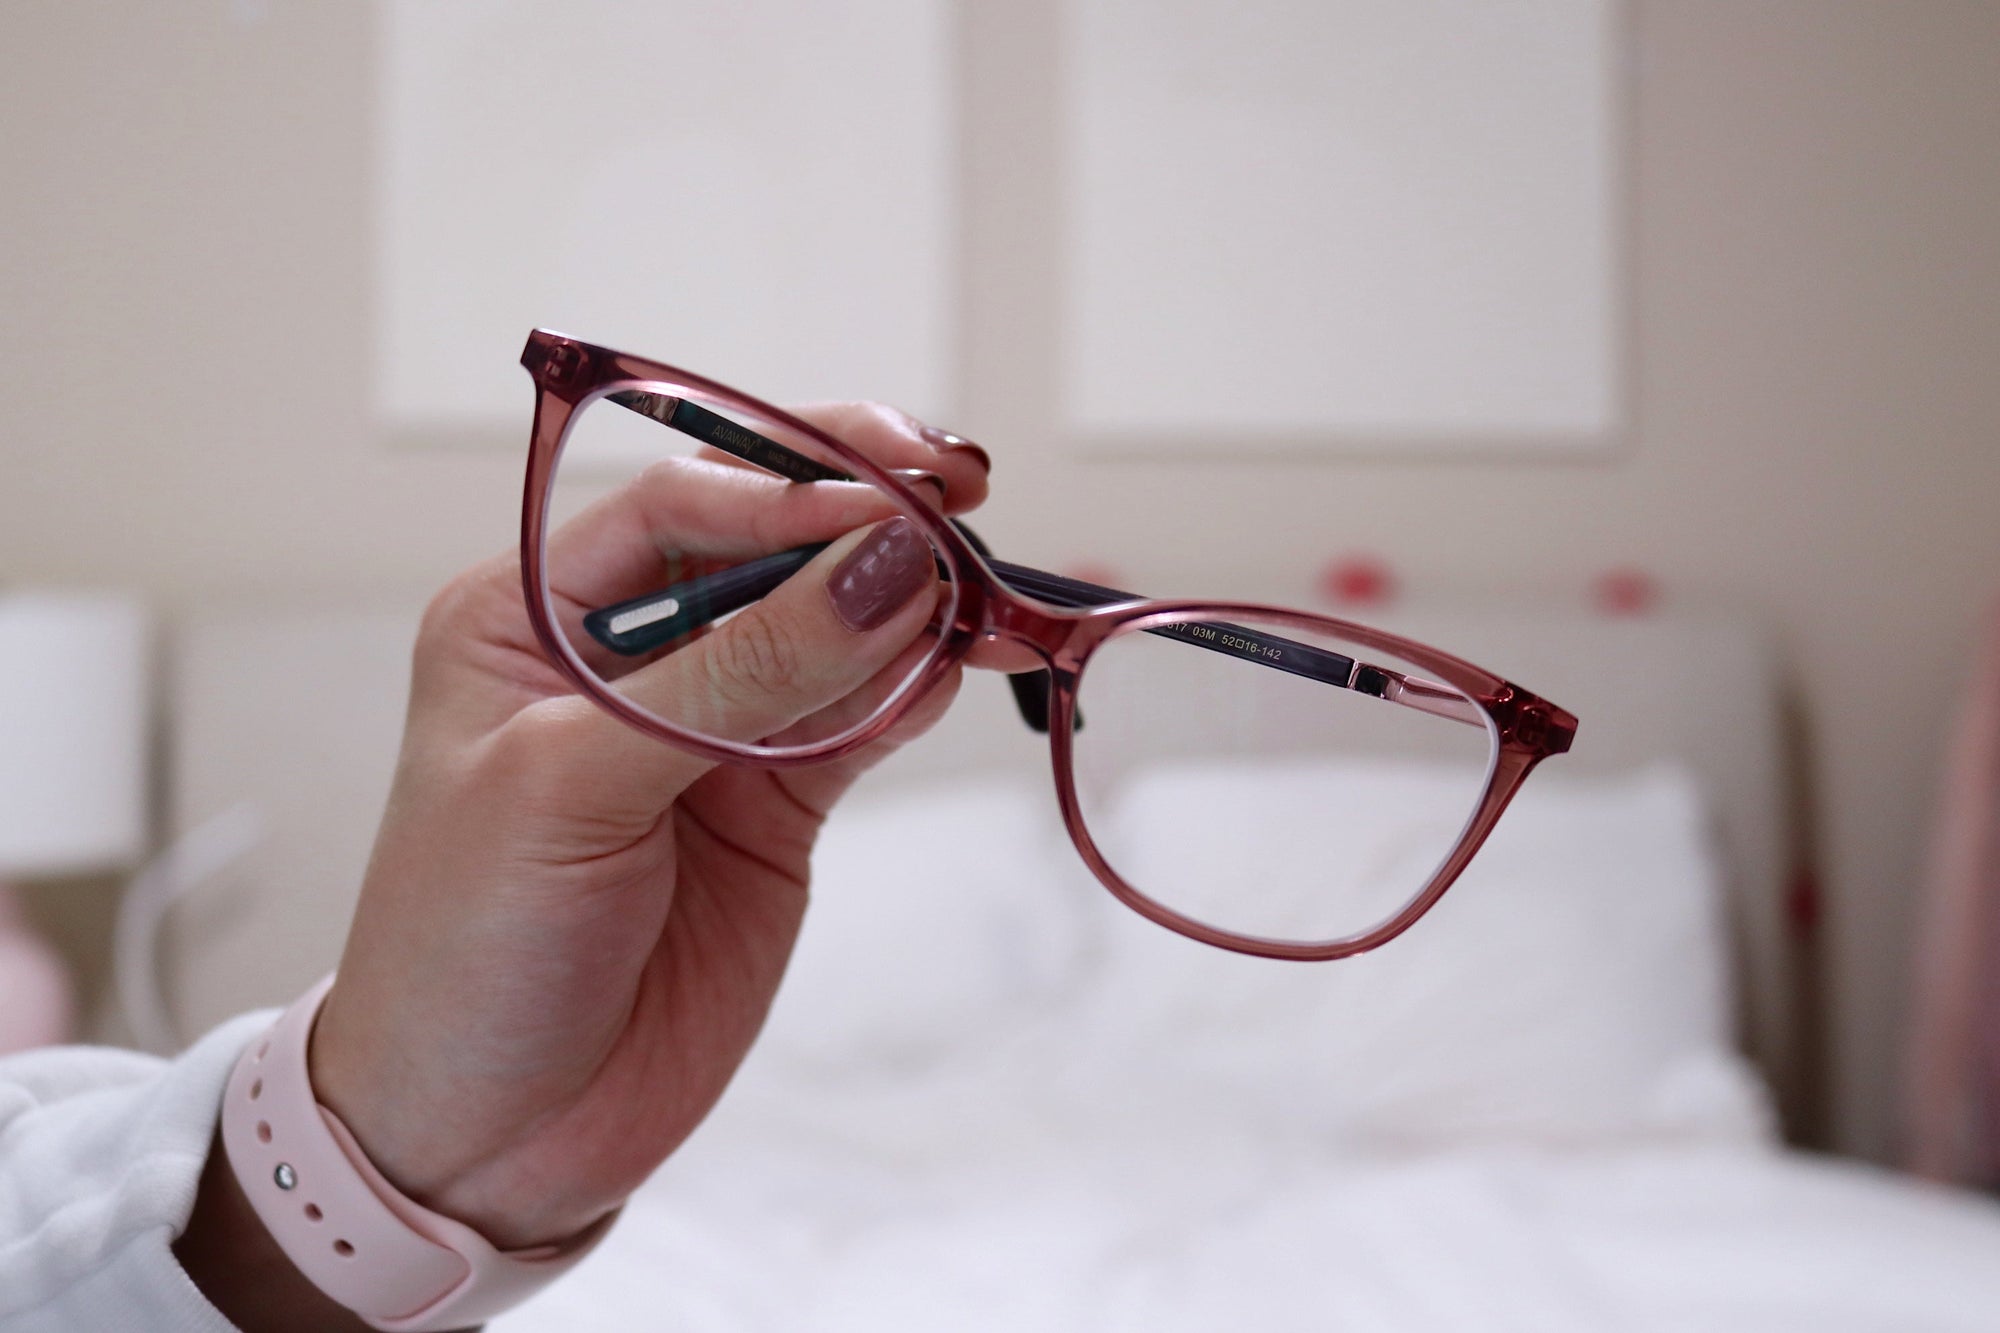 Do Blue Light Glasses Feel Weird? | KOALAEYE OPTICAL